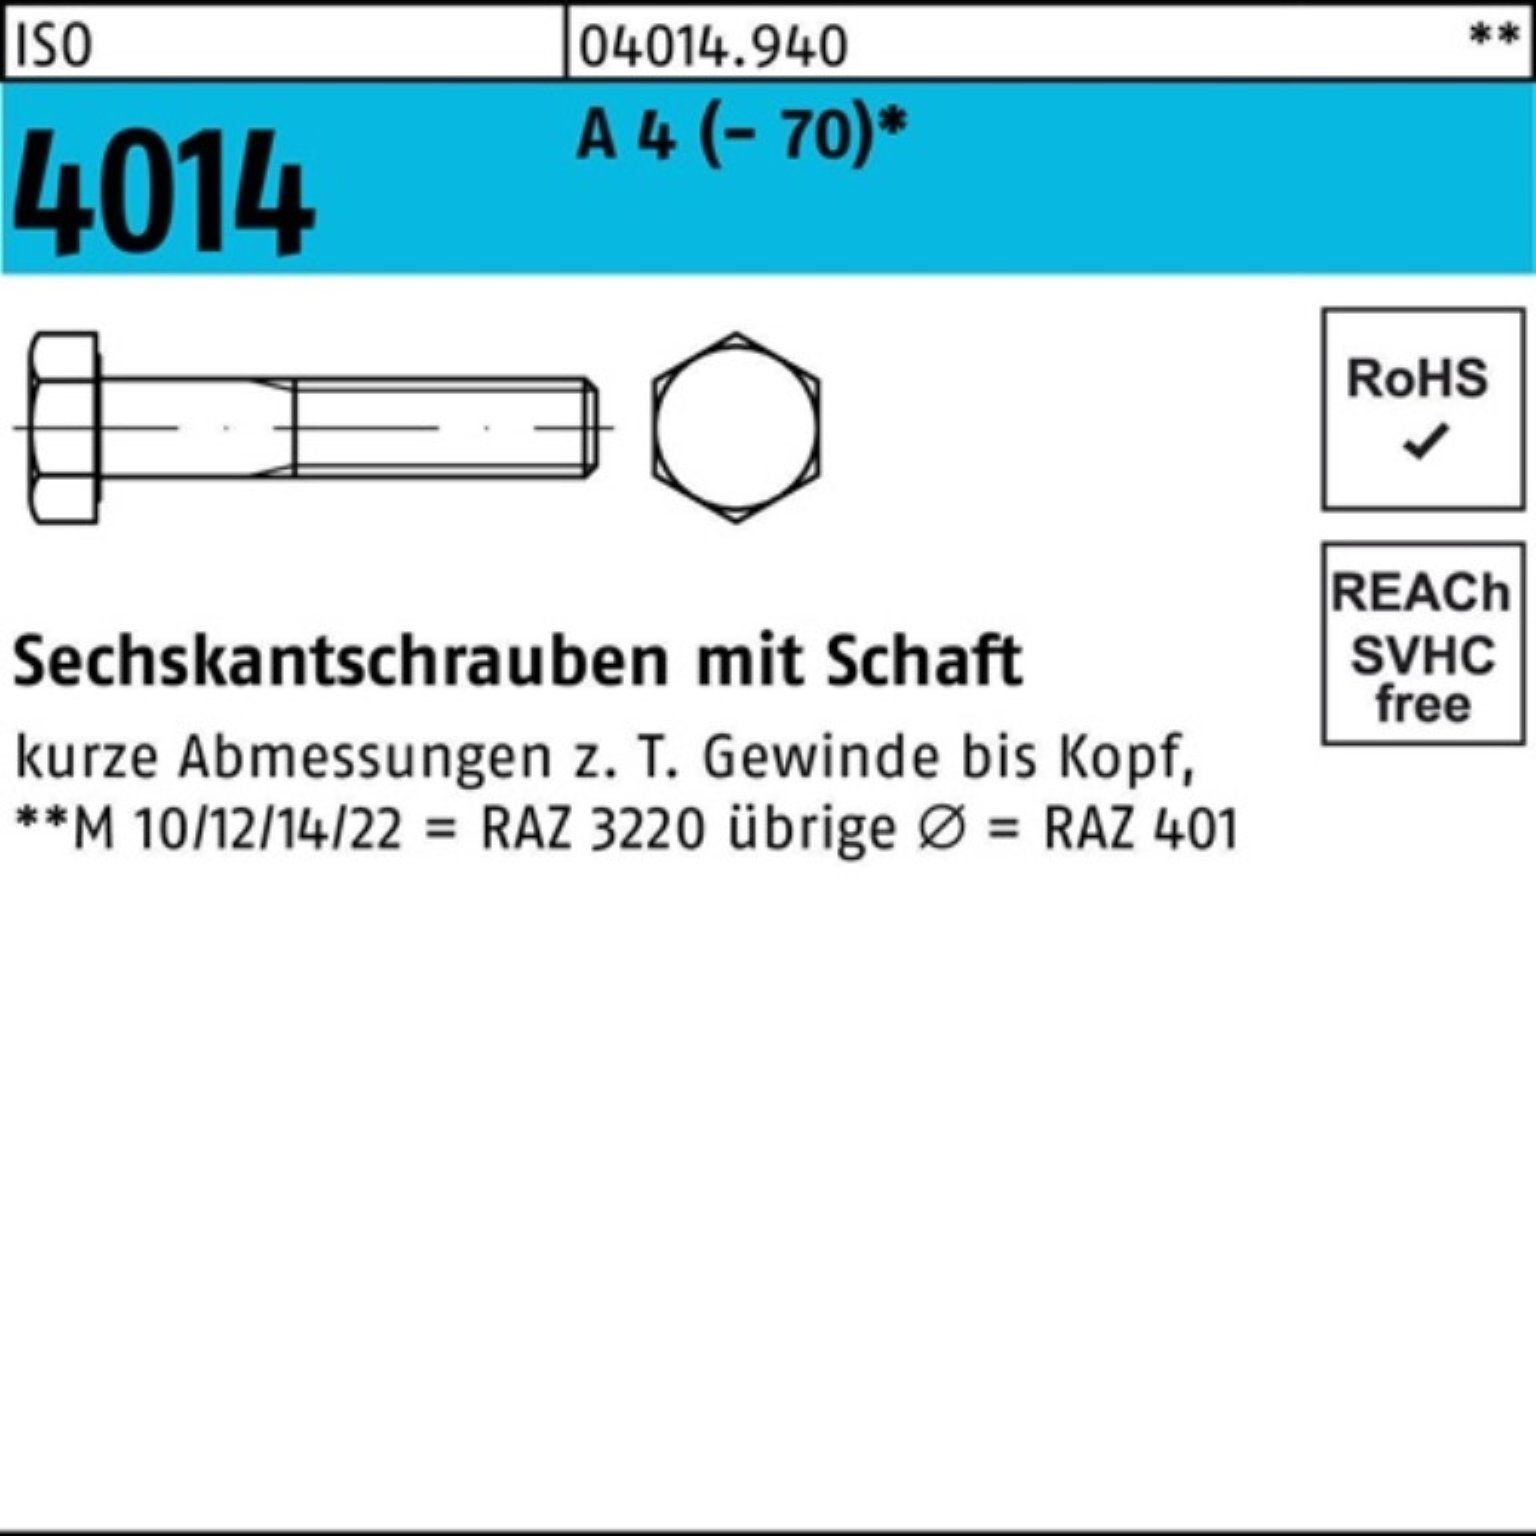 Bufab Sechskantschraube 100er Pack 4 St 4014 1 110 Sechskantschraube M18x ISO (70) A Schaft